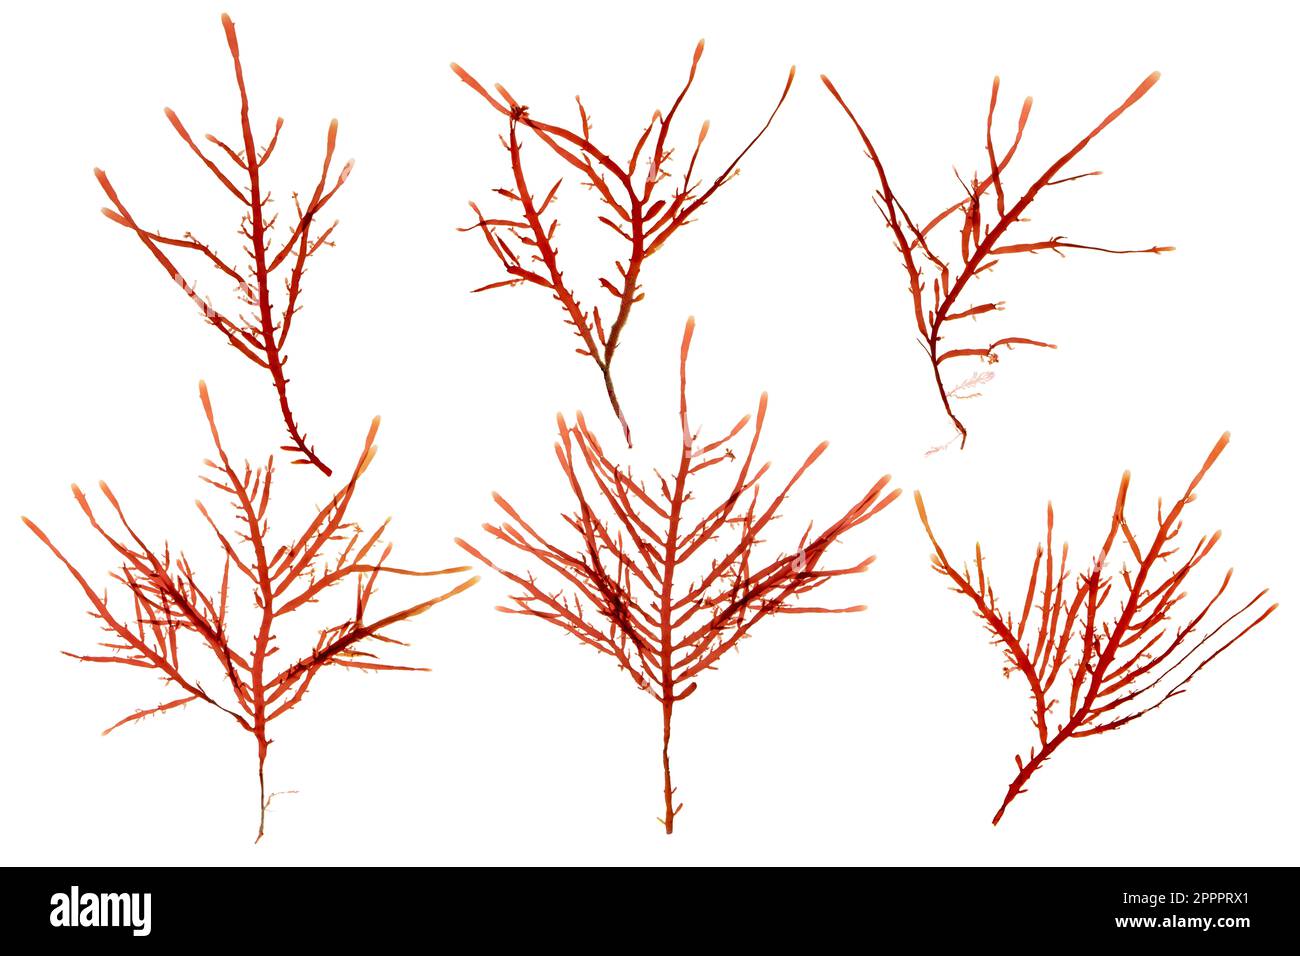 Rote Algen- oder rhodophyta-Äste, isoliert auf weiß. Rote Algen. Stockfoto